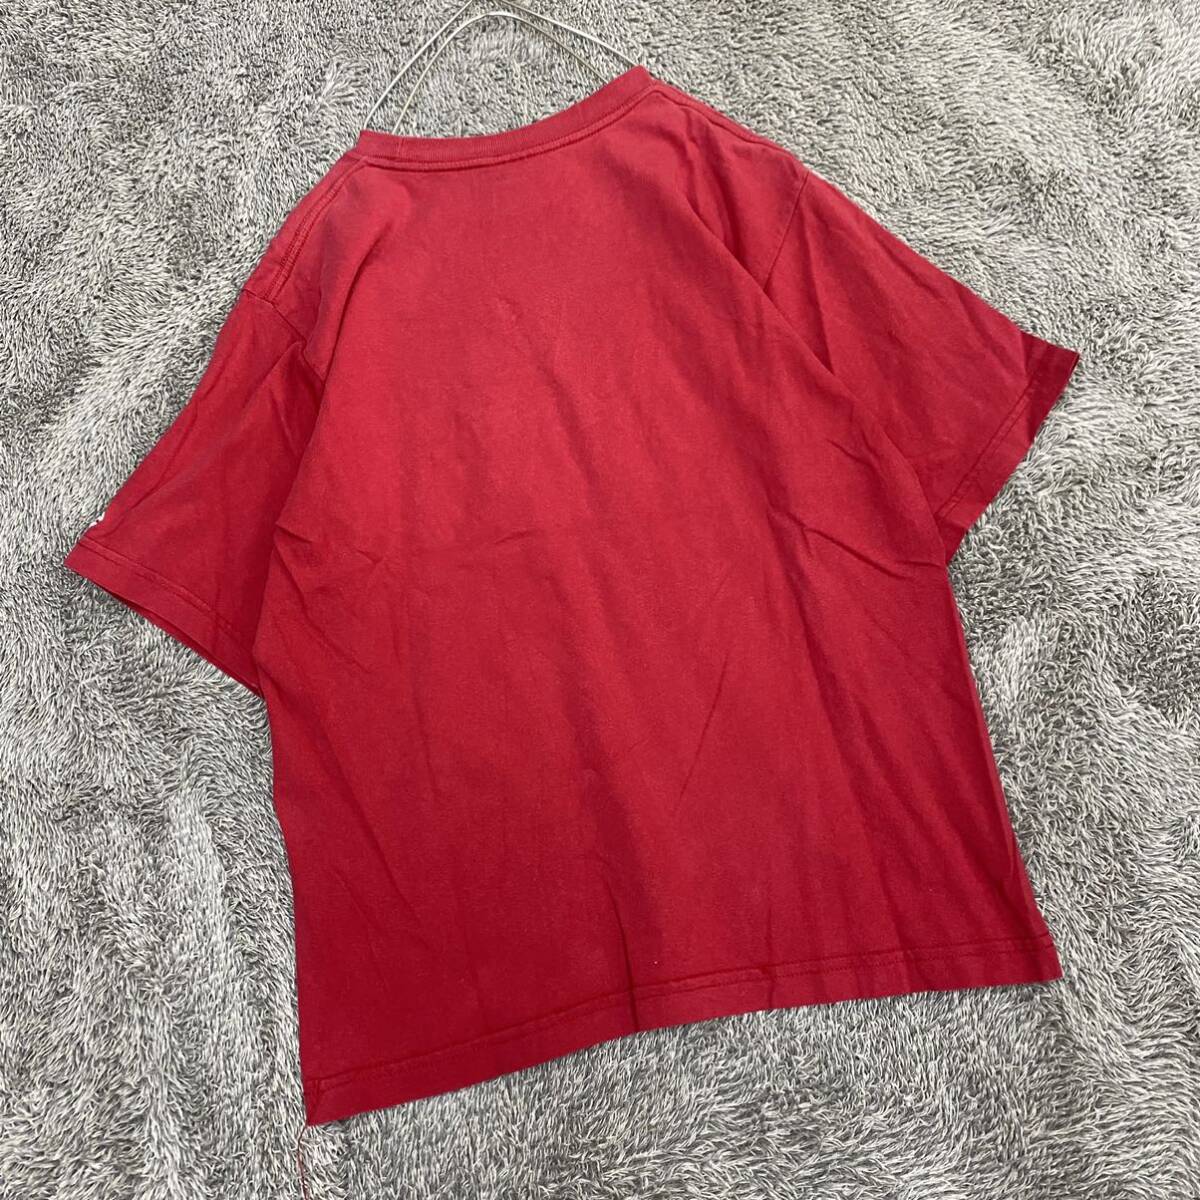 Champion チャンピオン Tシャツ 半袖カットソー サイズL レッド 赤 メンズ トップス 最落なし （Z18）の画像2